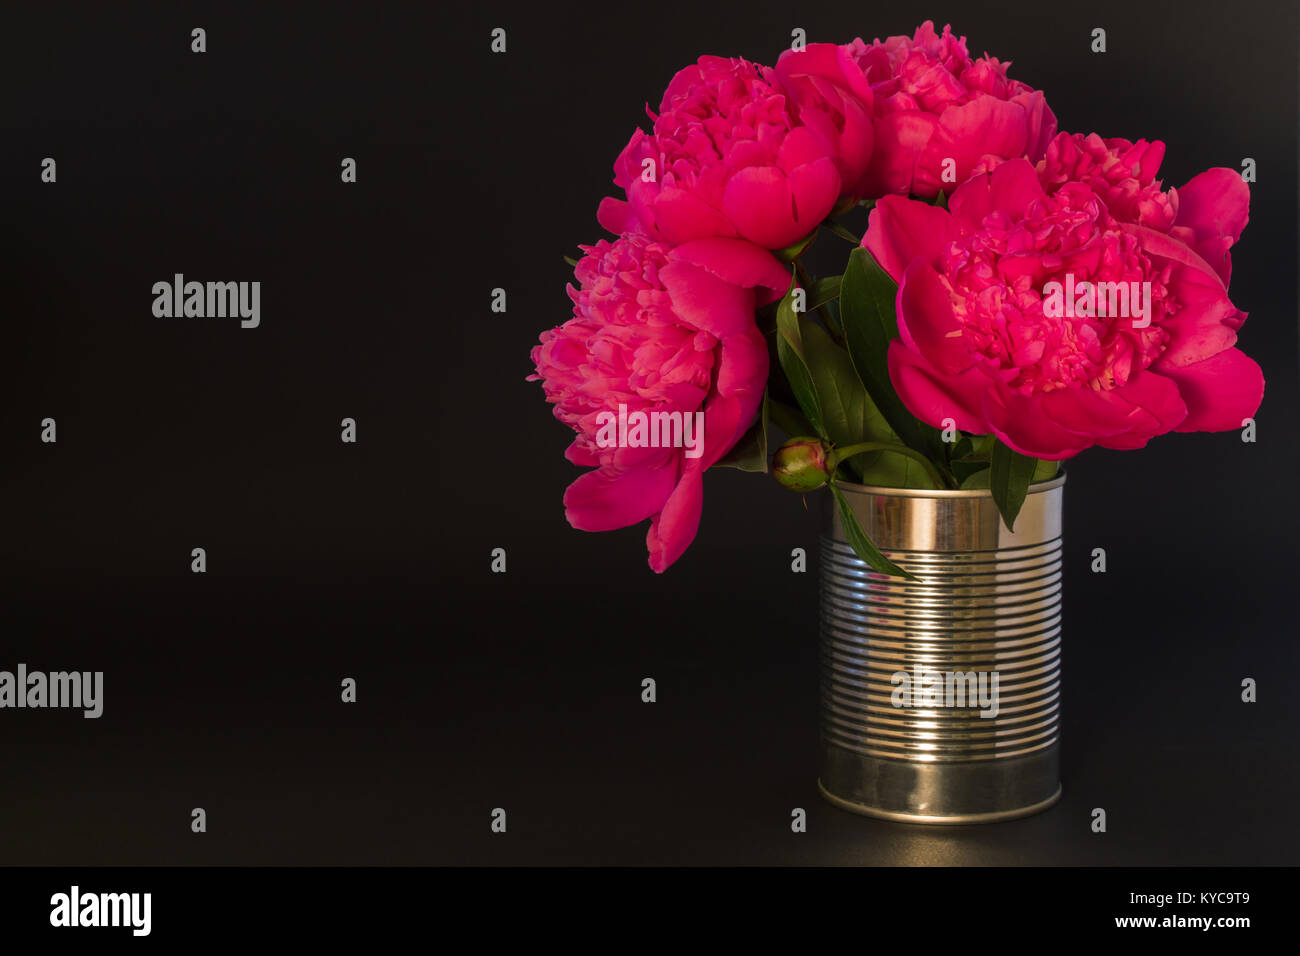 Bouquet de pivoines roses dans un vase en métal sur fond noir Banque D'Images